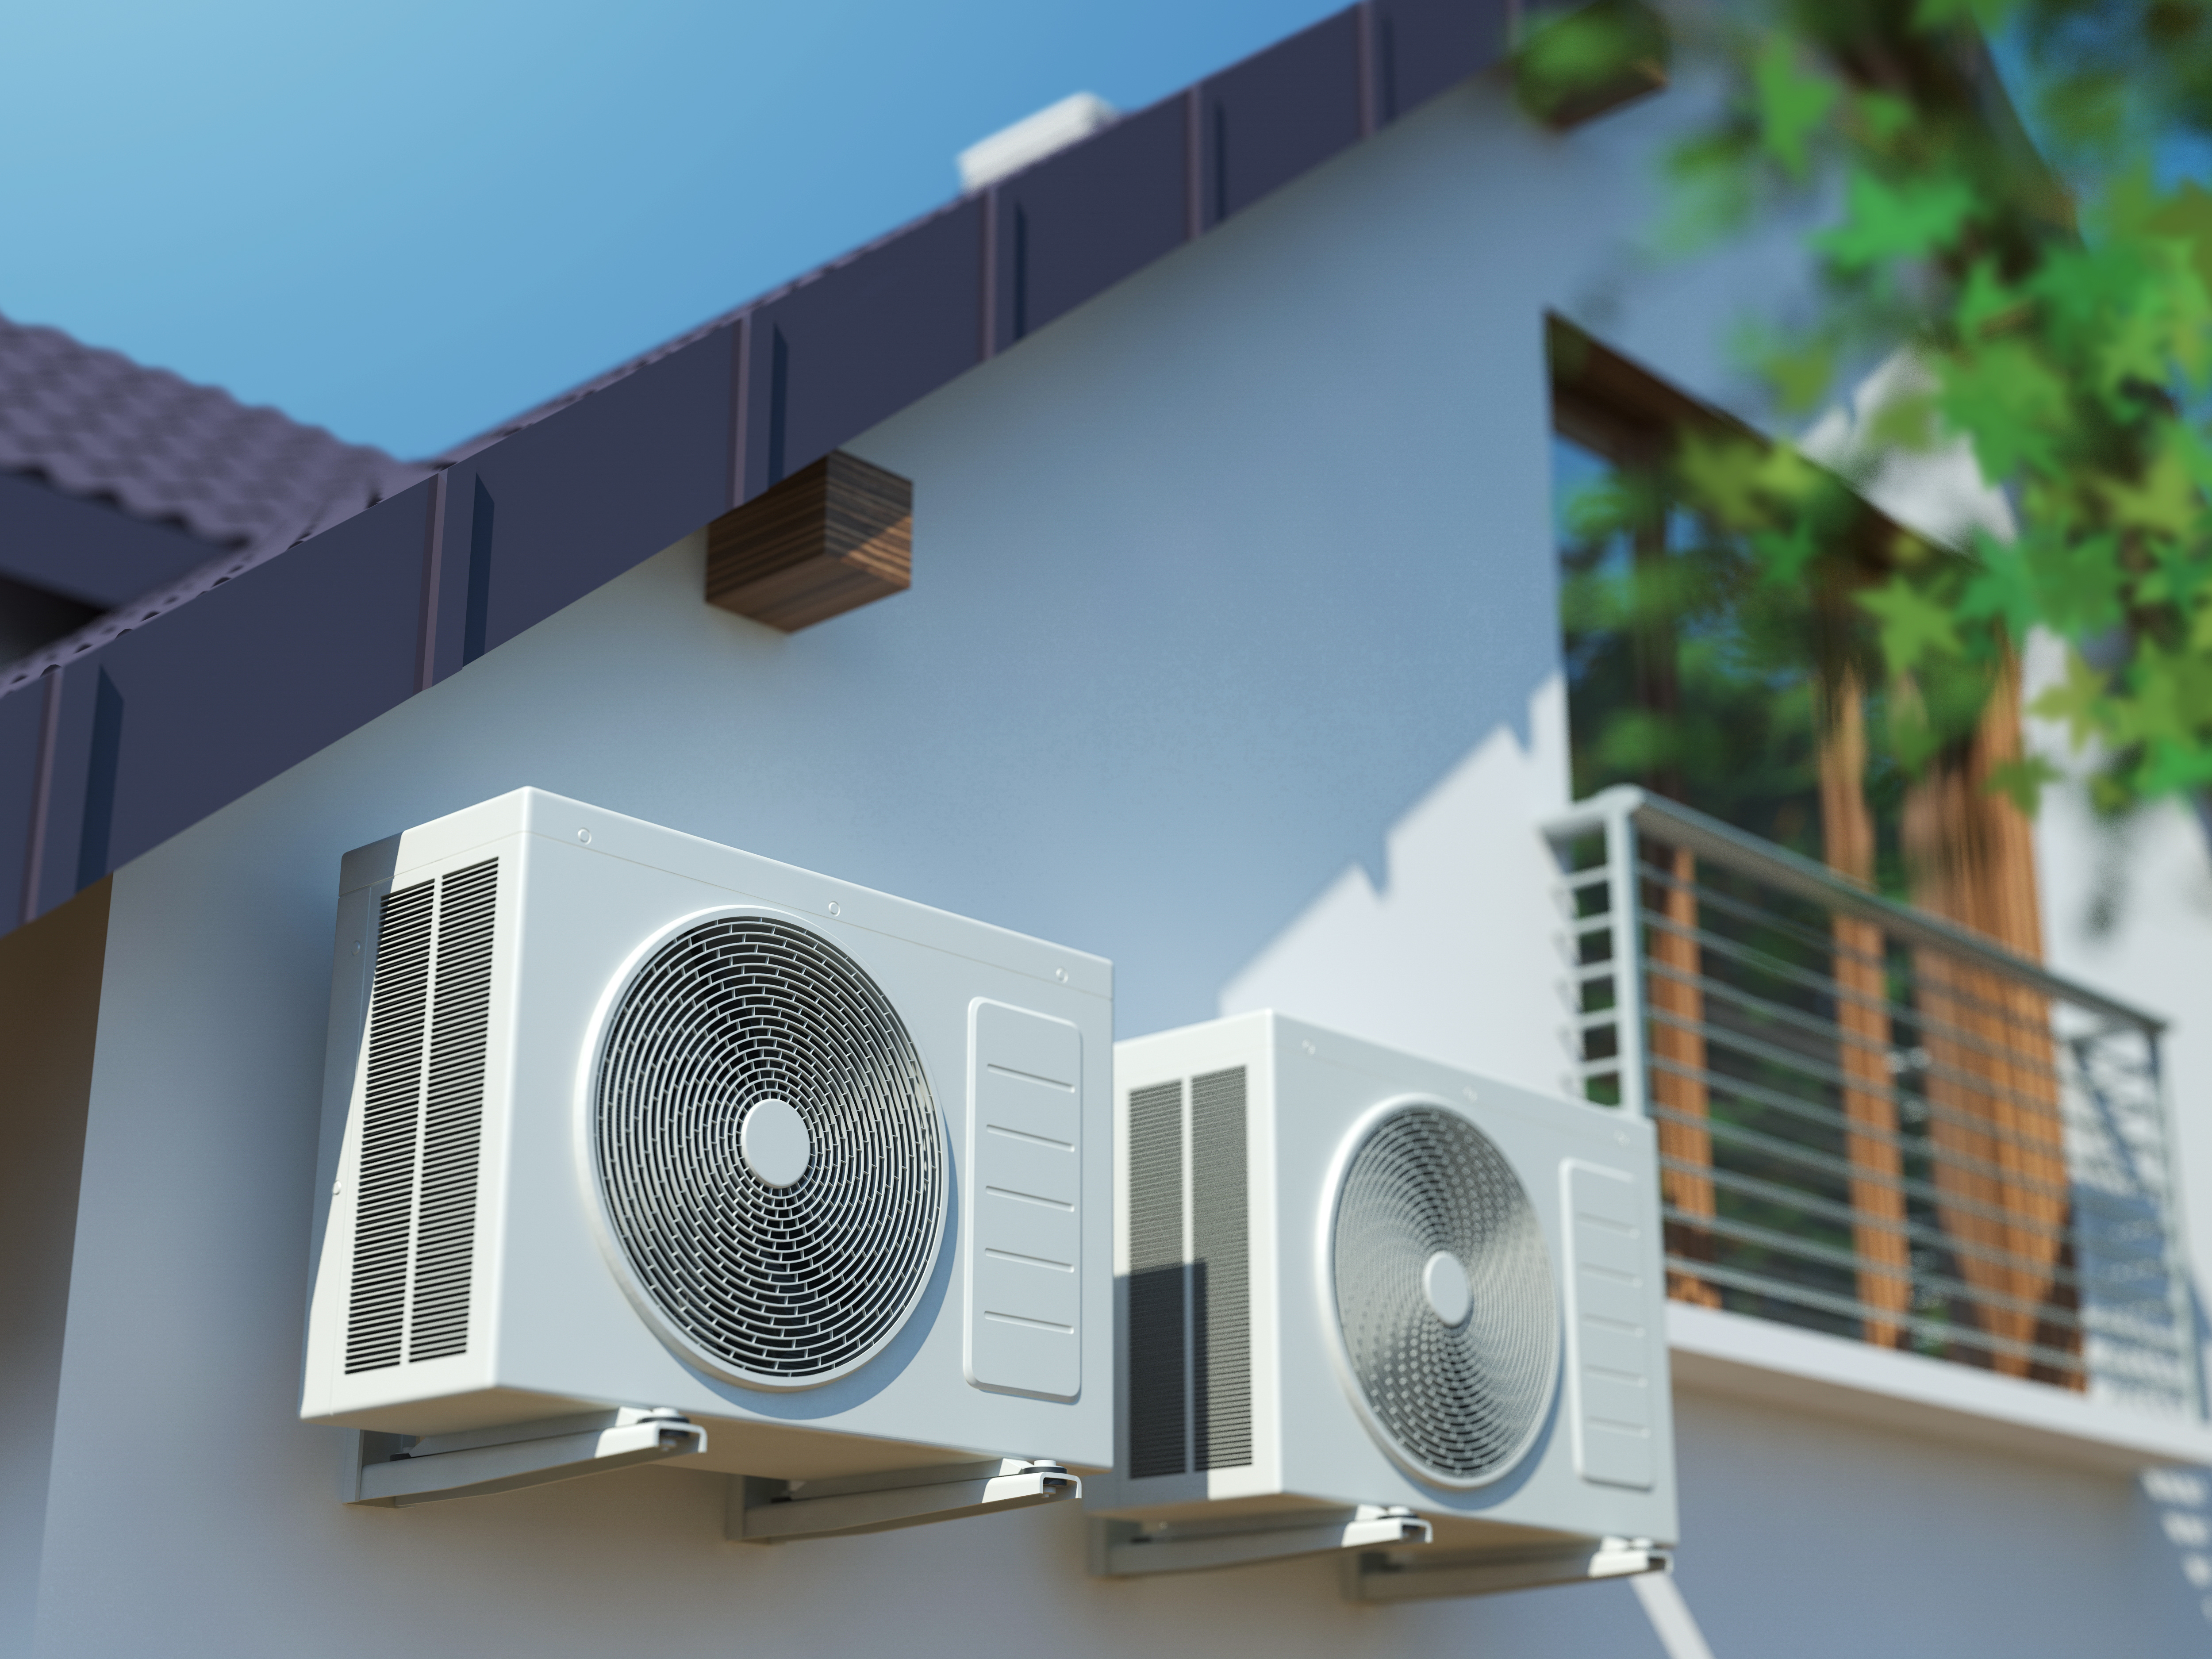 Klimaanlage mit zwei Außeneinheiten an einer Hauswand